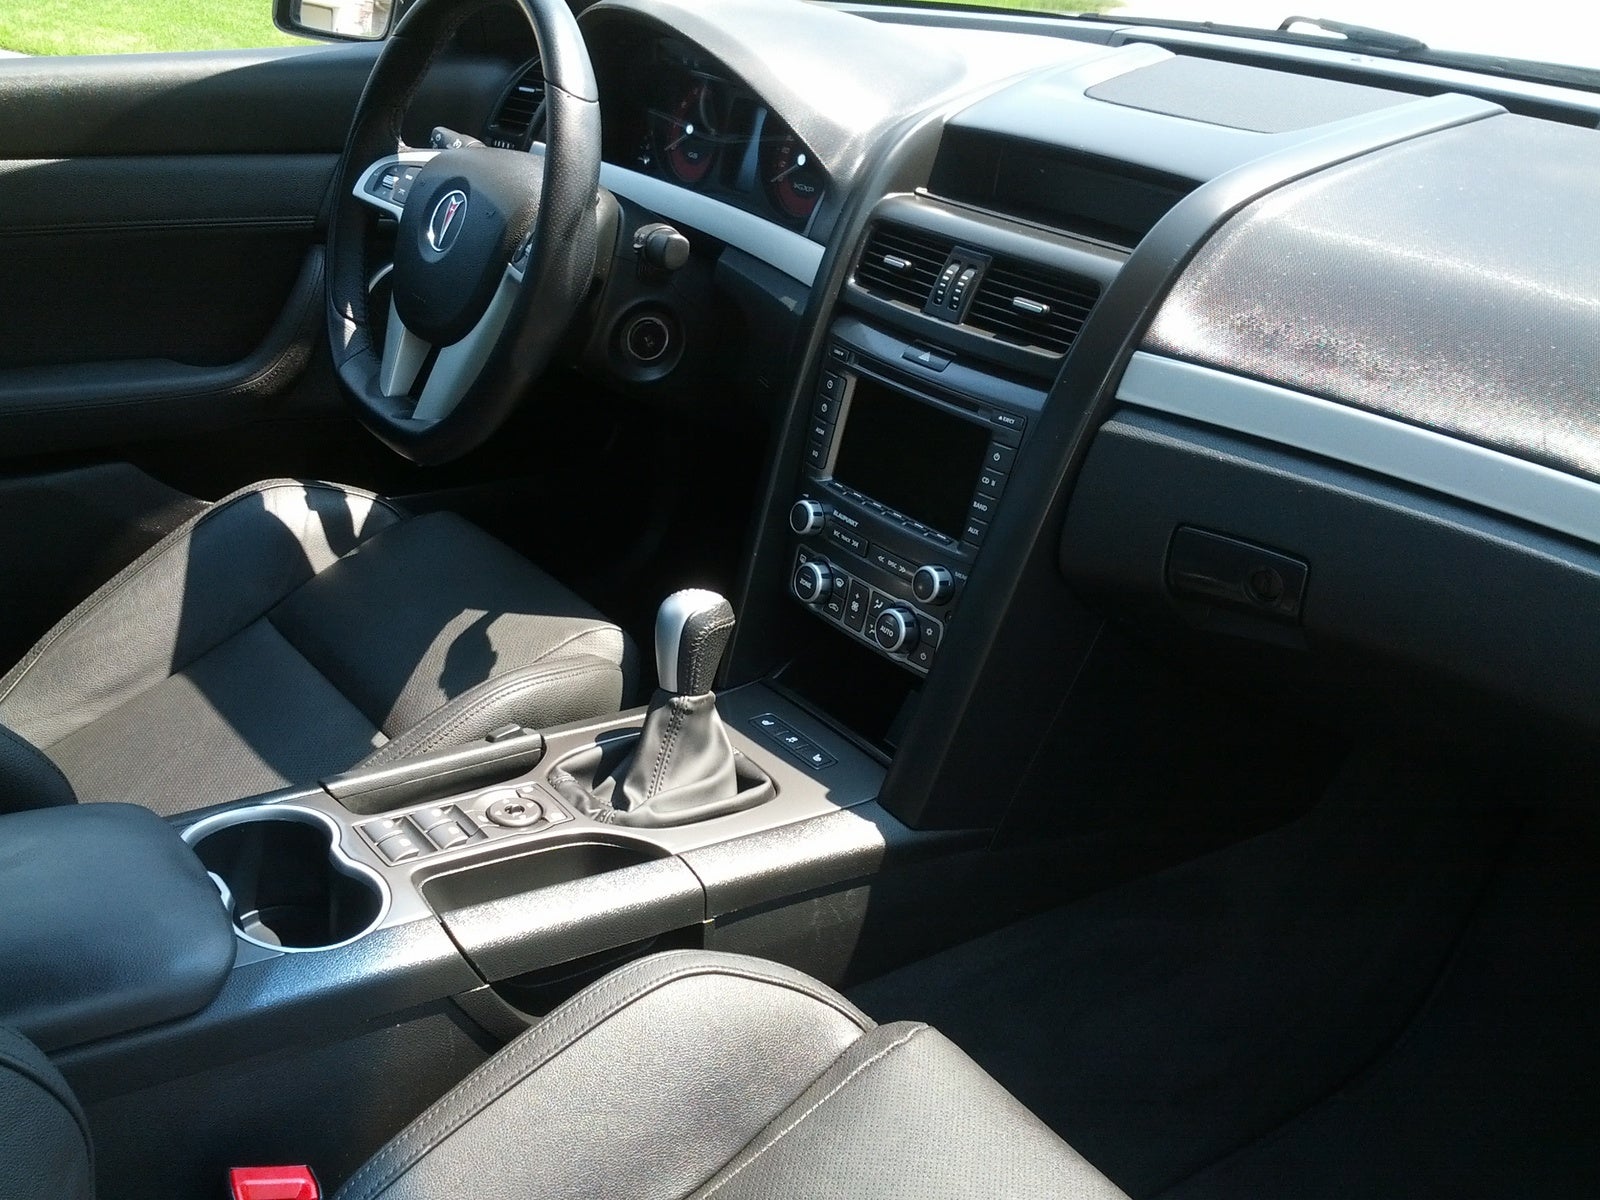 2009 Pontiac G8 Interior Pictures CarGurus.